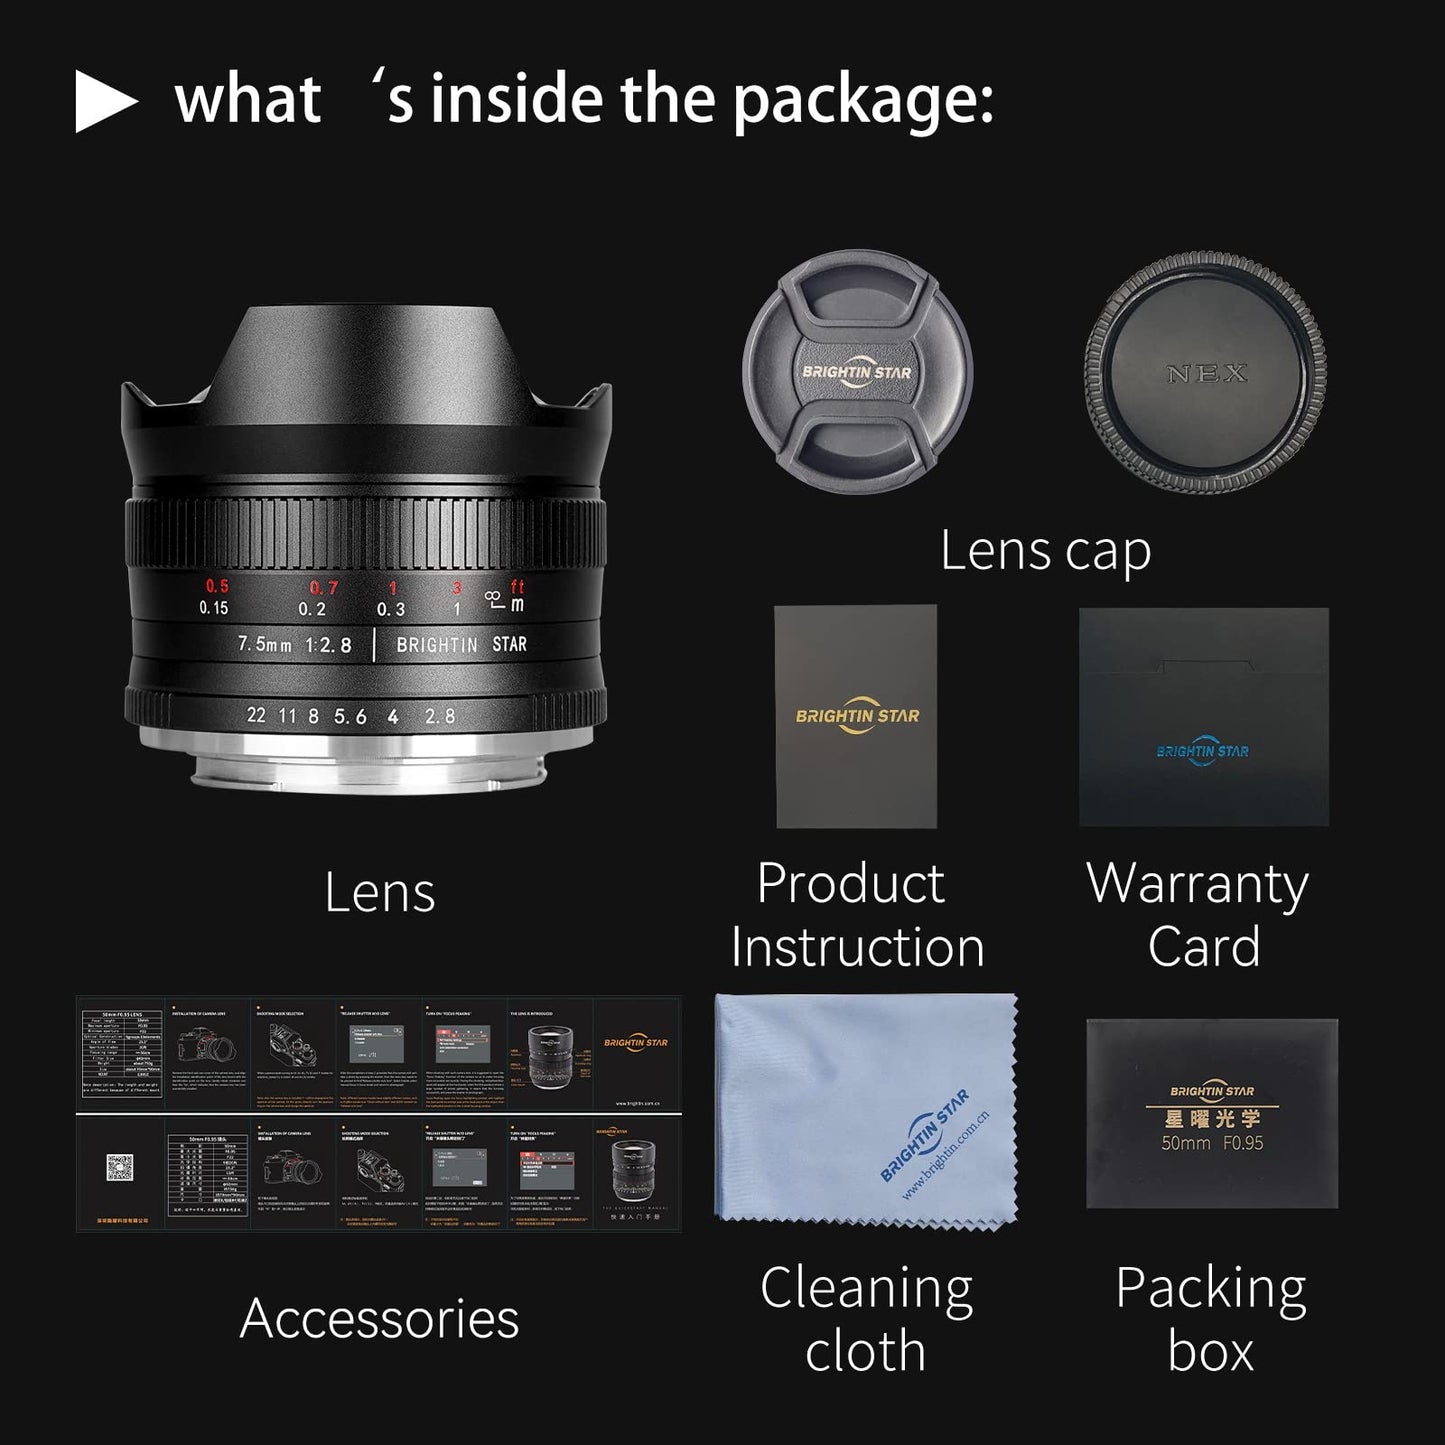 7.5mm F2.8 Fisheye Manual Focus Prime Lens for Sony E-Mount